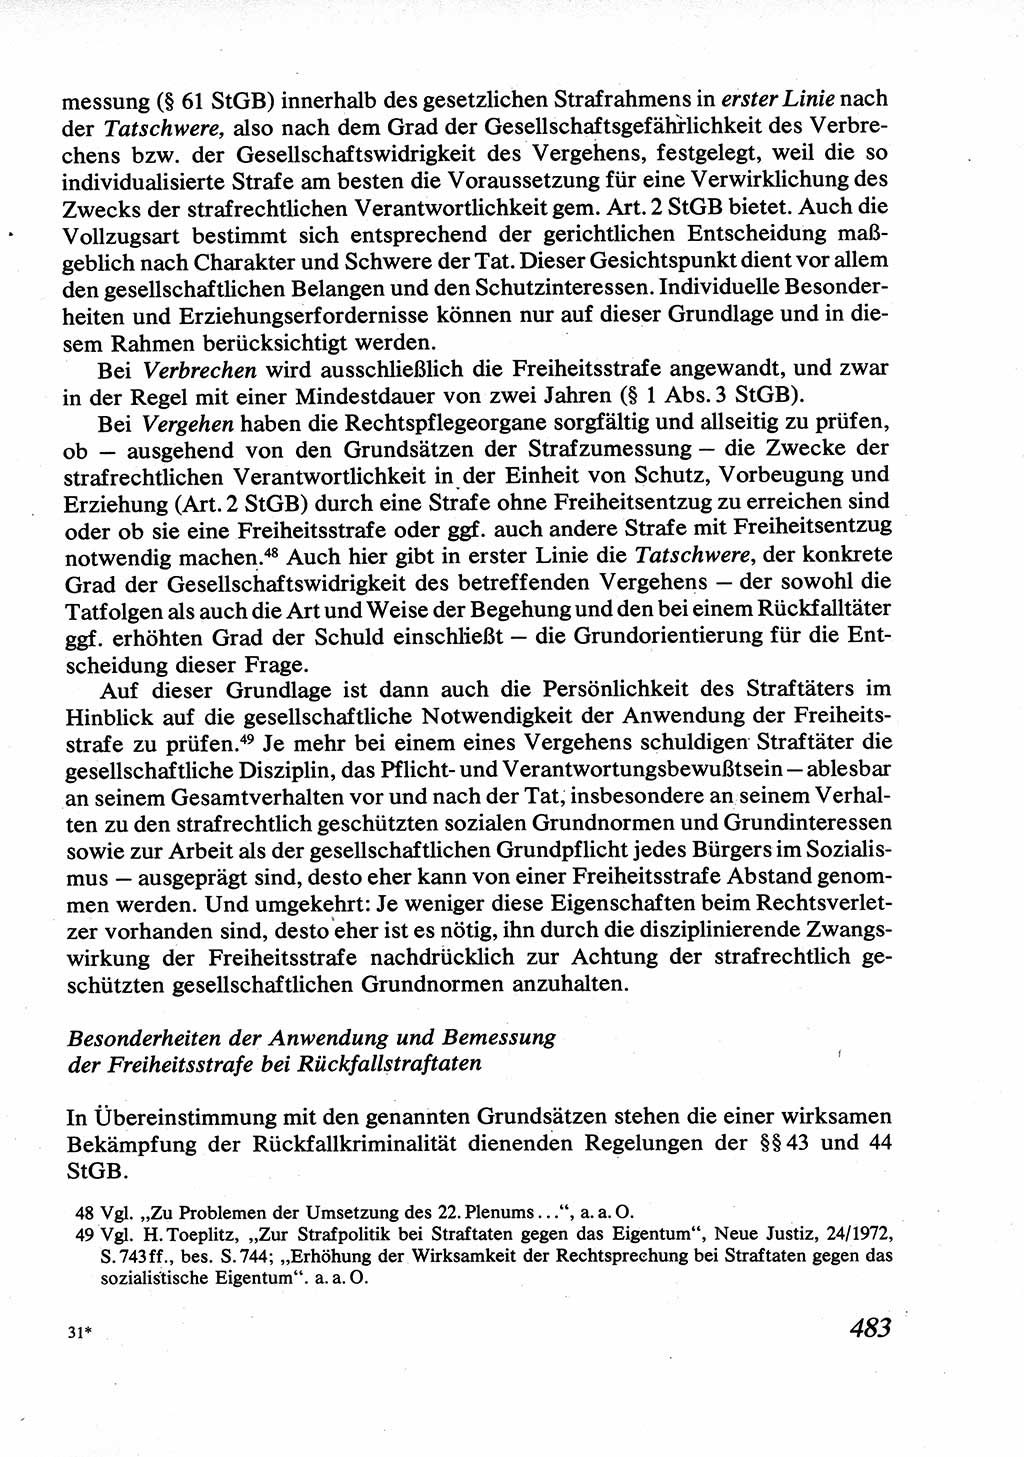 Strafrecht [Deutsche Demokratische Republik (DDR)], Allgemeiner Teil, Lehrbuch 1976, Seite 483 (Strafr. DDR AT Lb. 1976, S. 483)